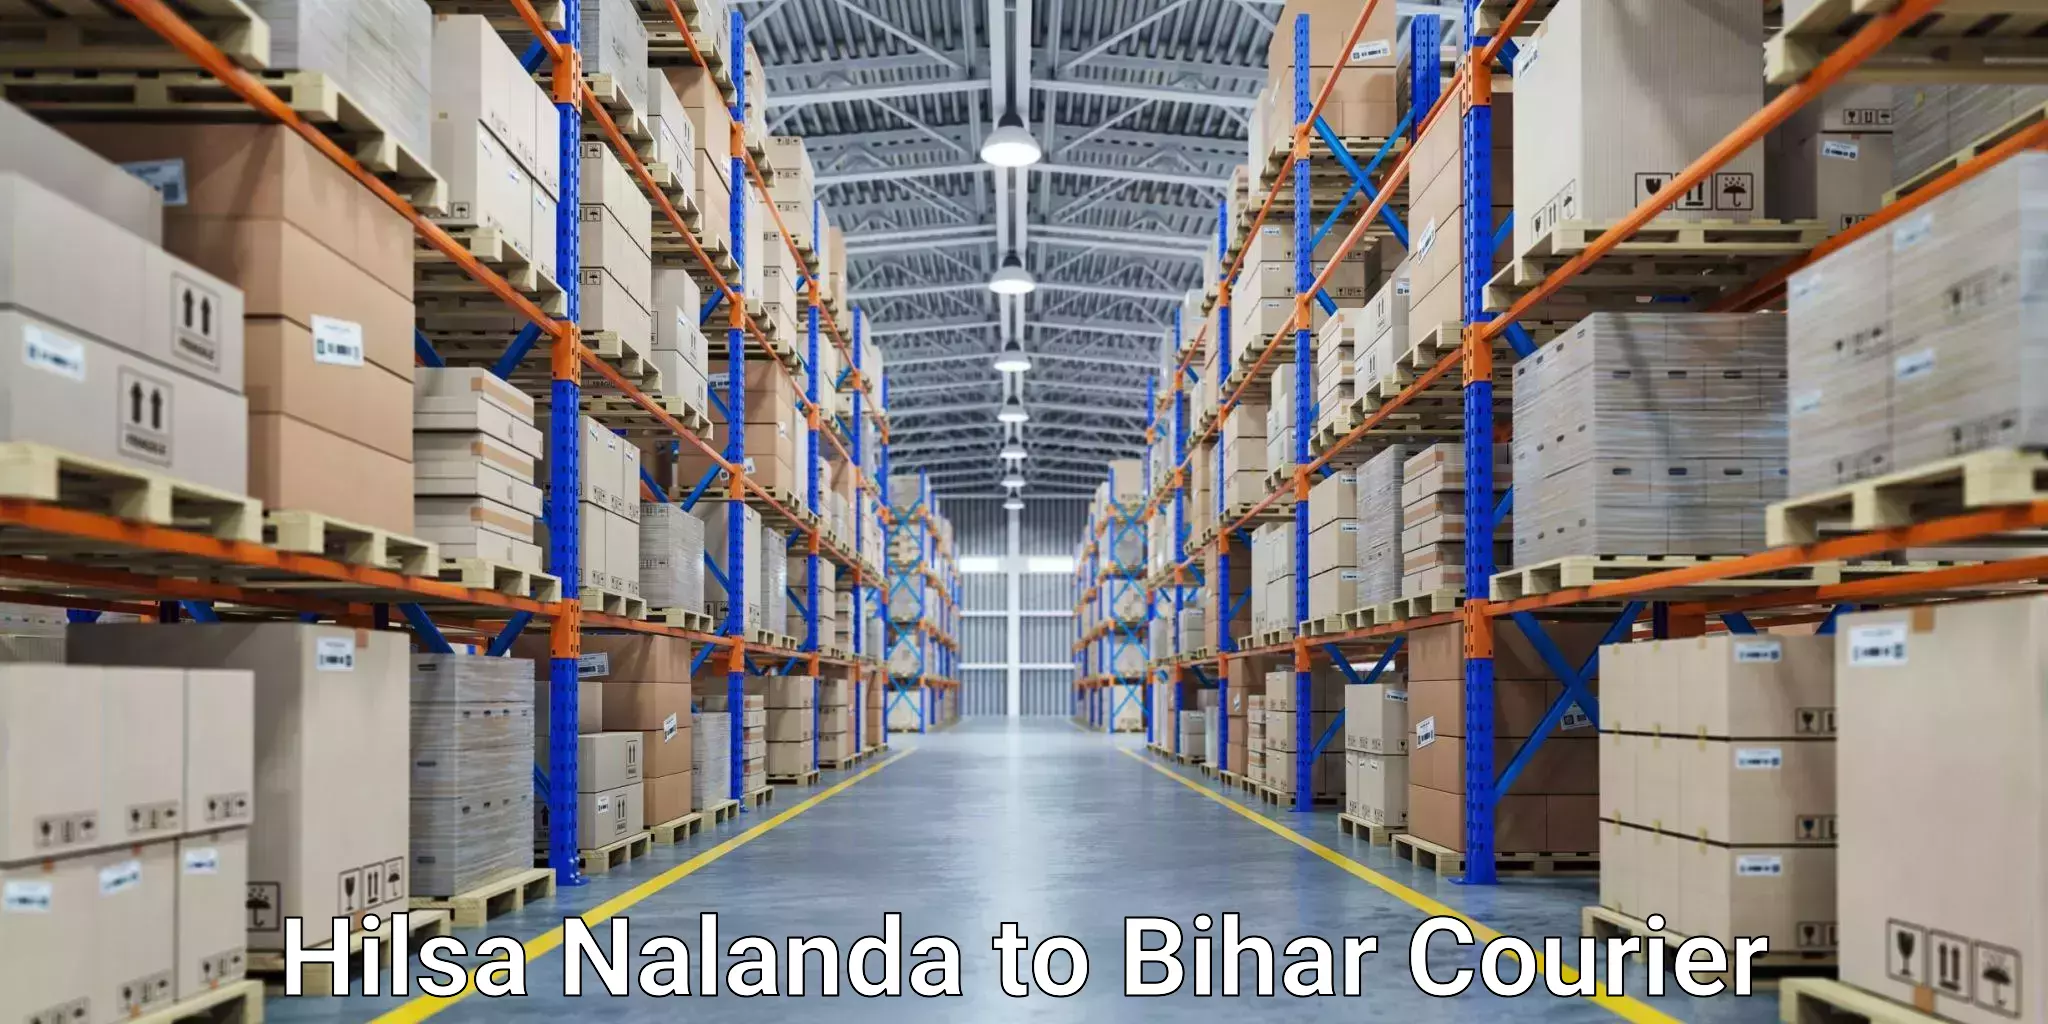 Reliable delivery network Hilsa Nalanda to Imamganj